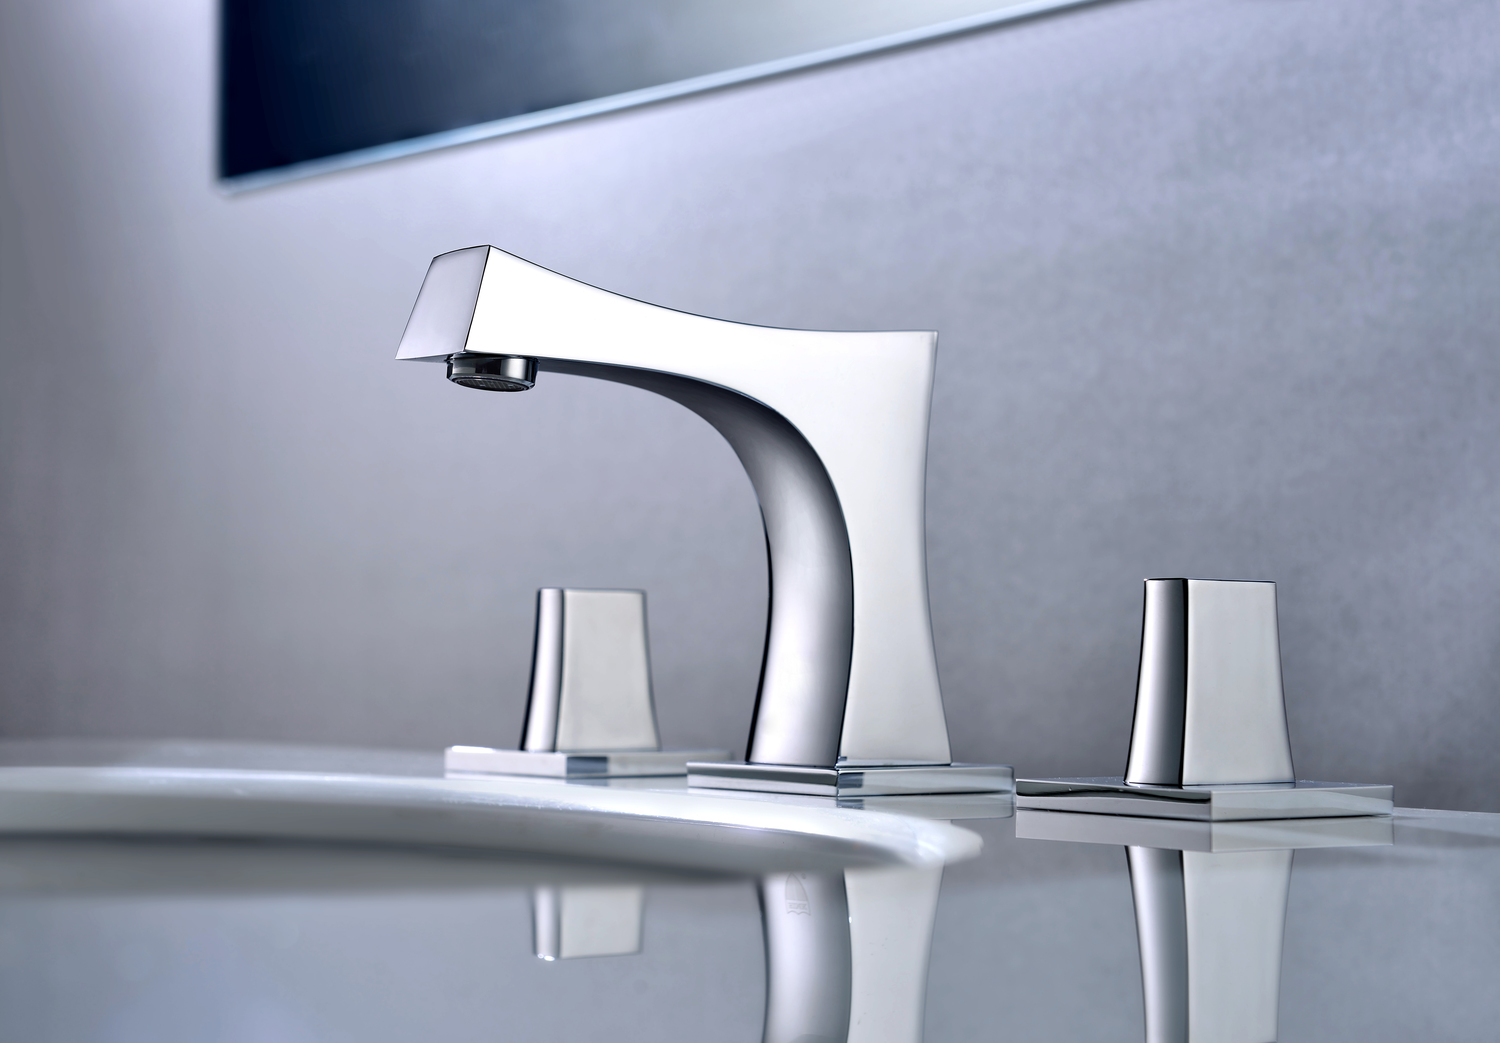 sink for bathroom with cabinet American Imaginations Vanity Set Bathroom Vanities Dawn Grey Modern